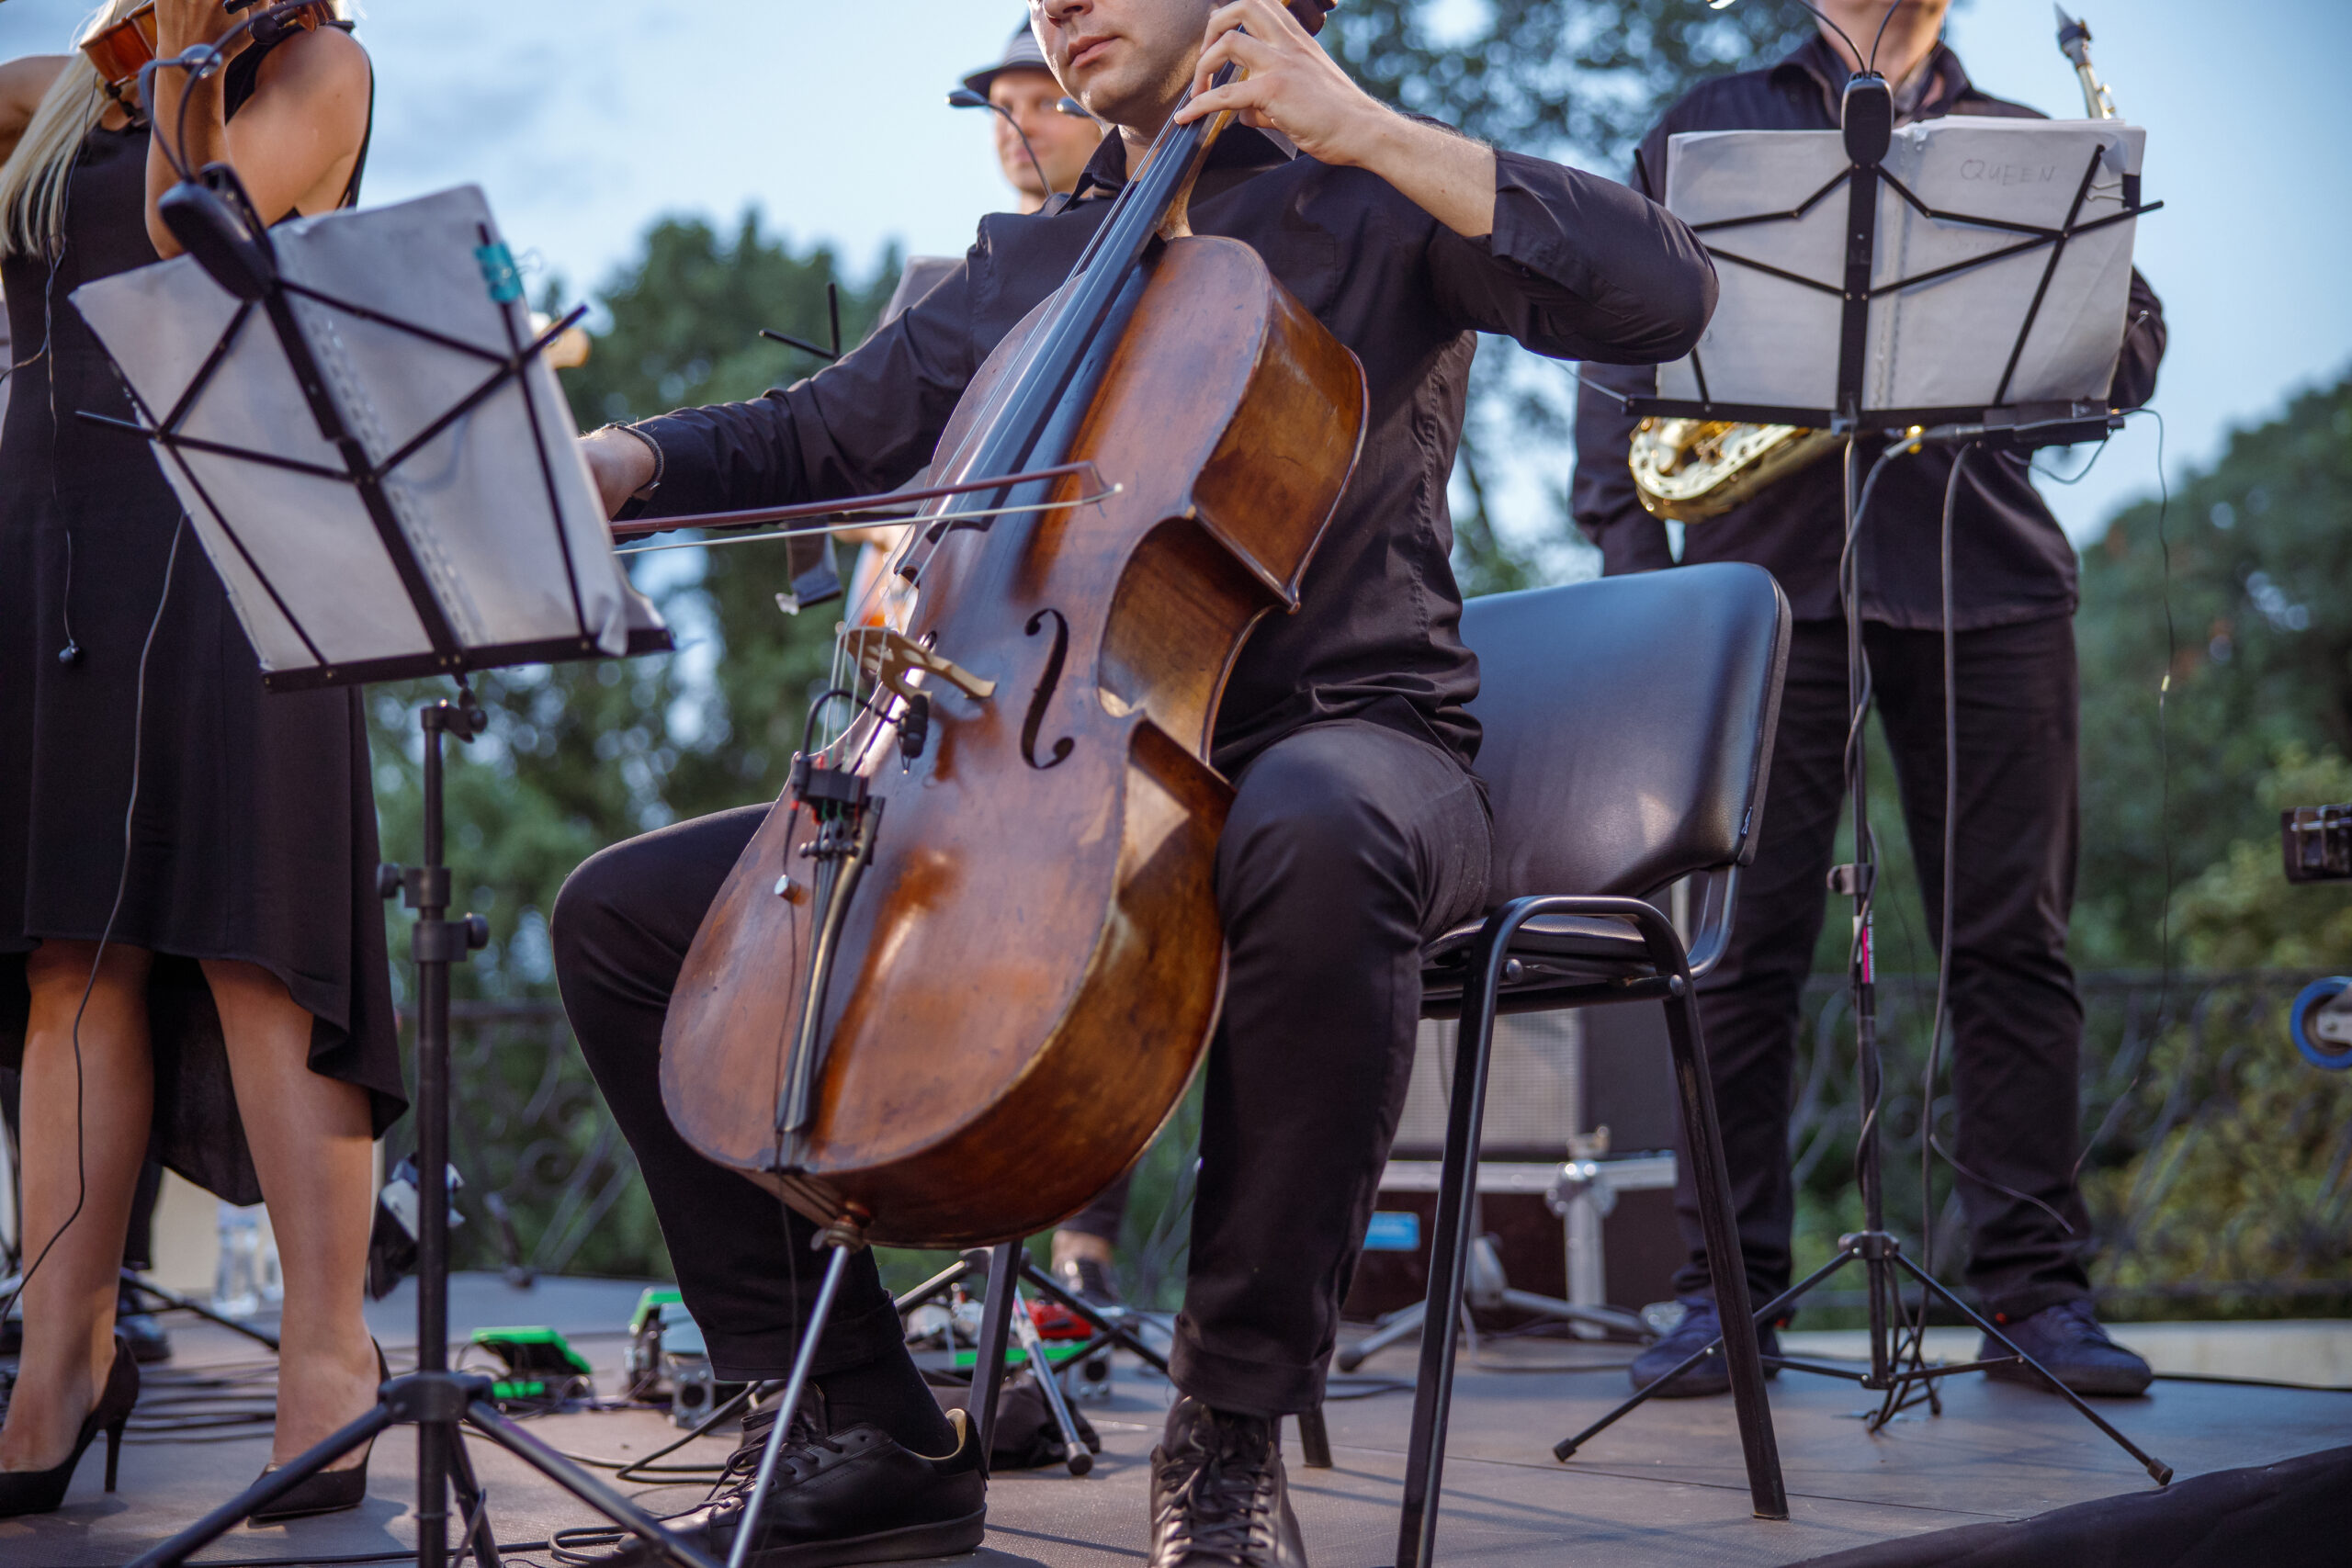 Male musician plays violoncello